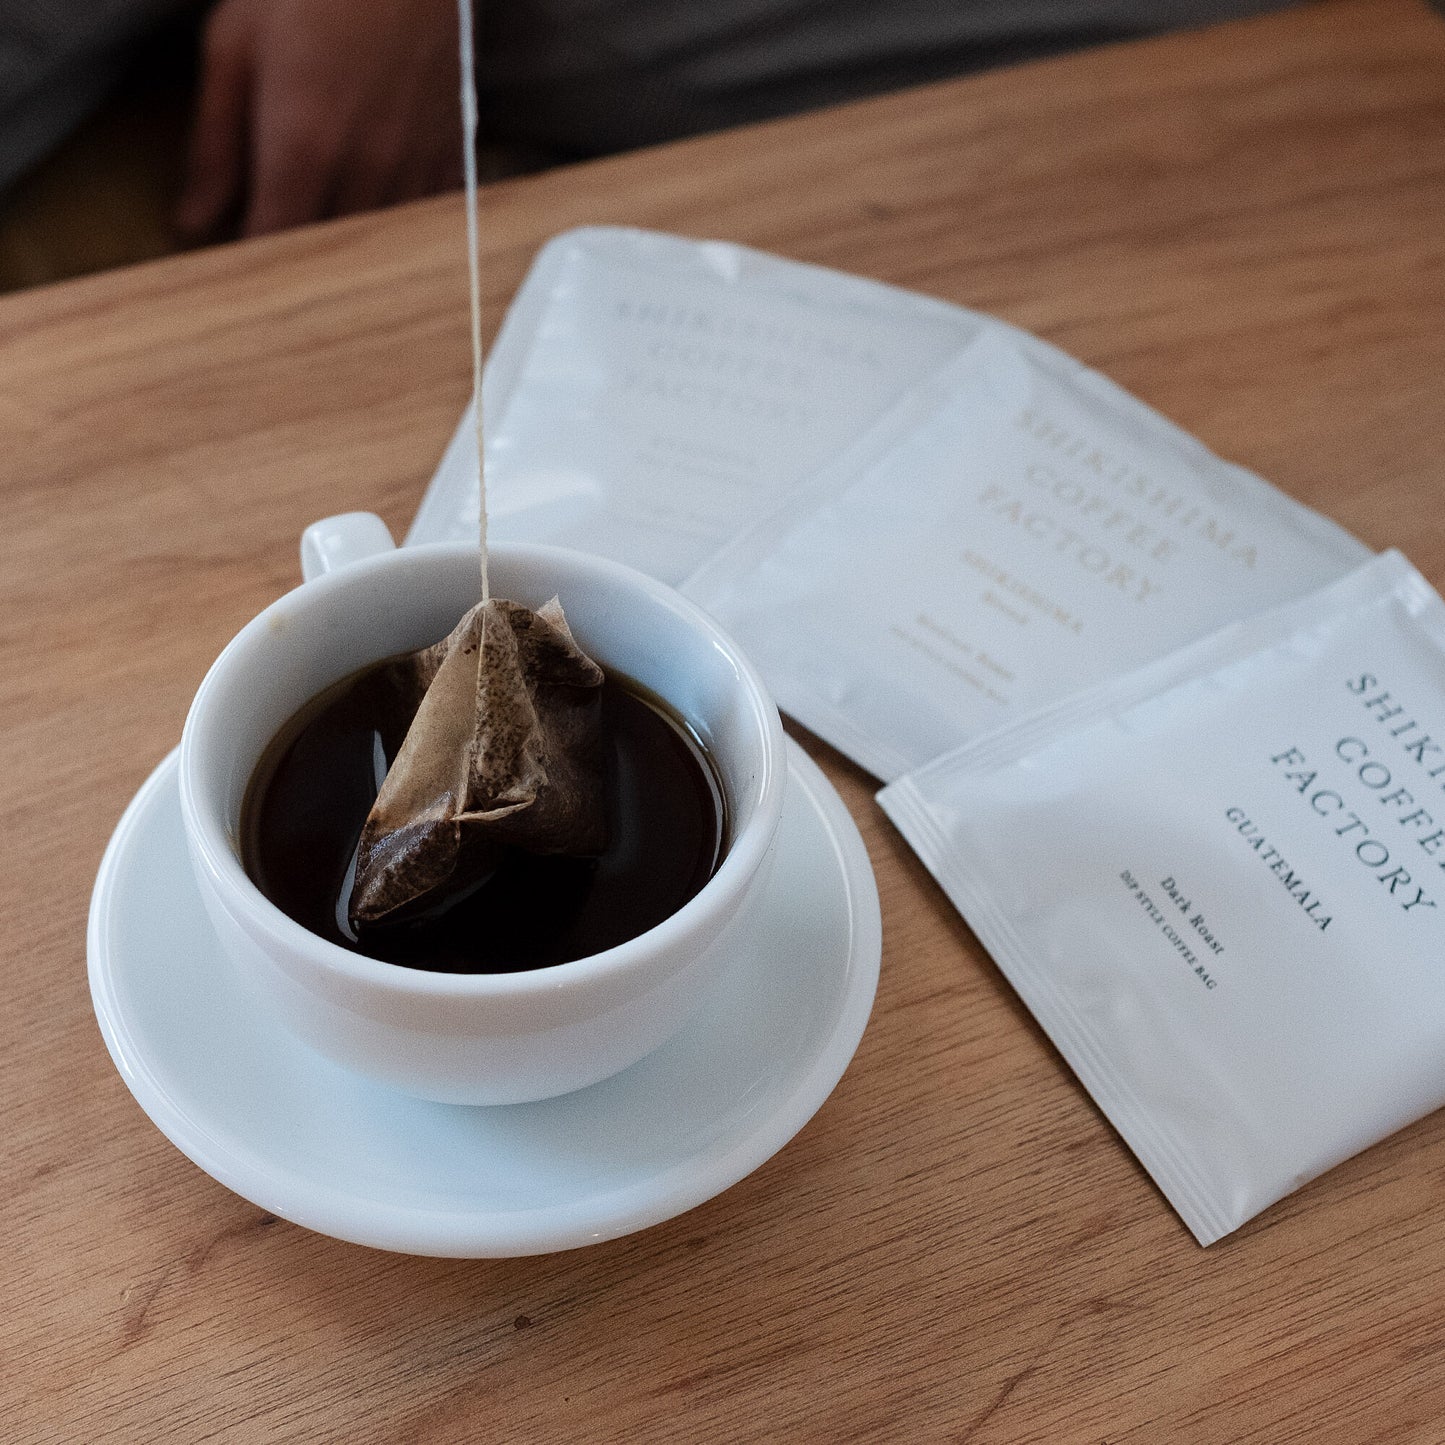 Coffee Bag | ETHIOPIA | Shimekt Daba